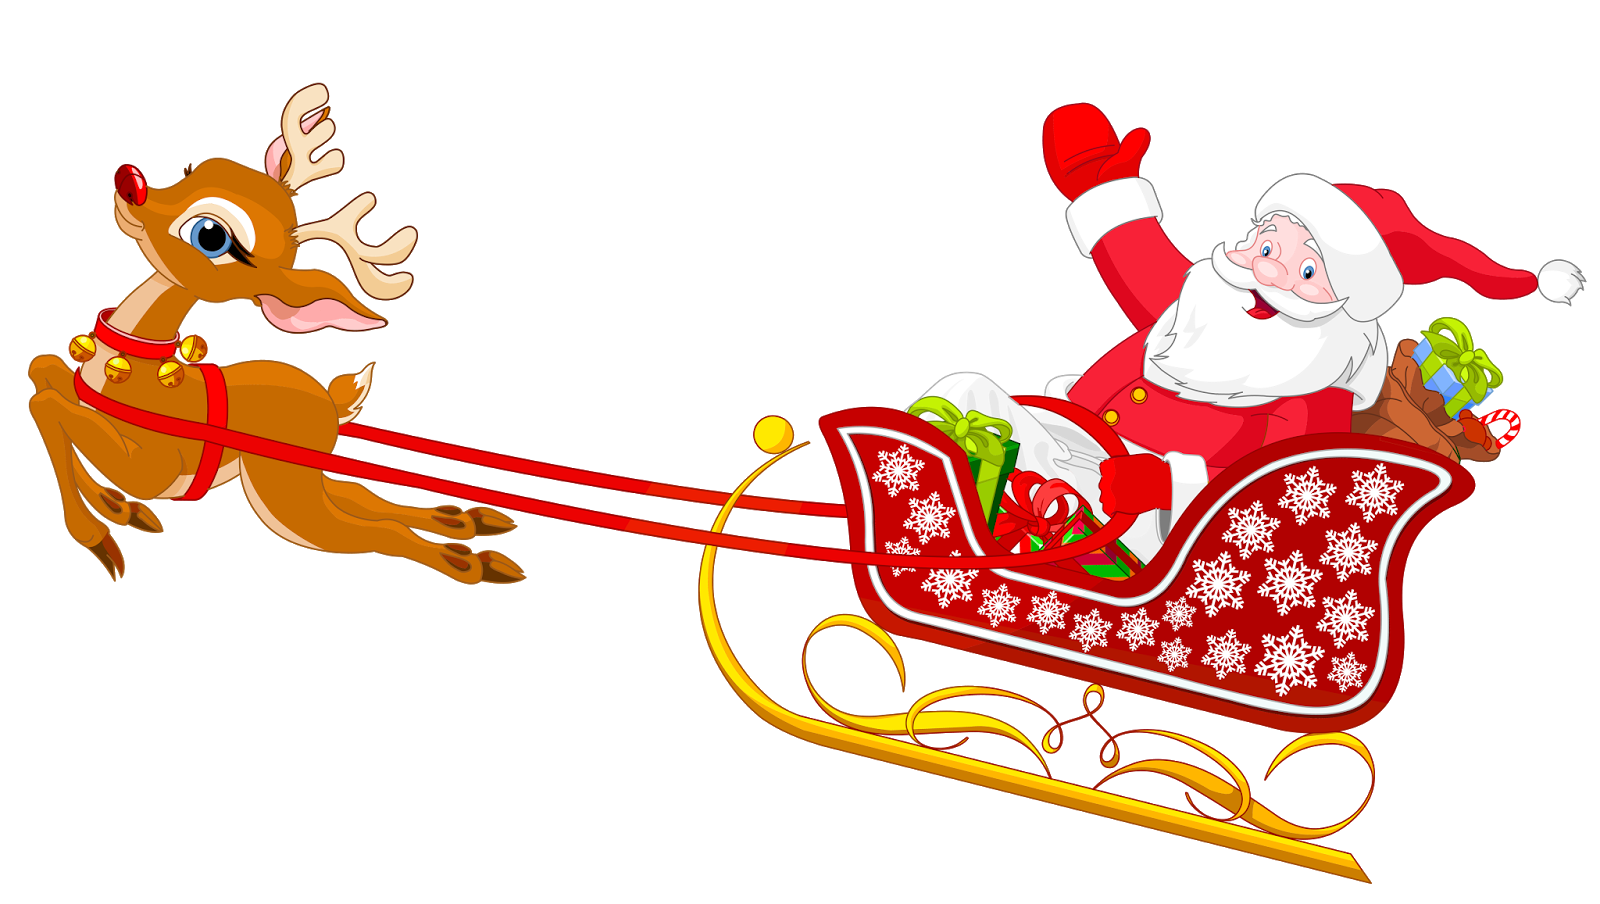 Santa Claus Sled Clip art - santa sleigh png download - 1600*904 - Free ...